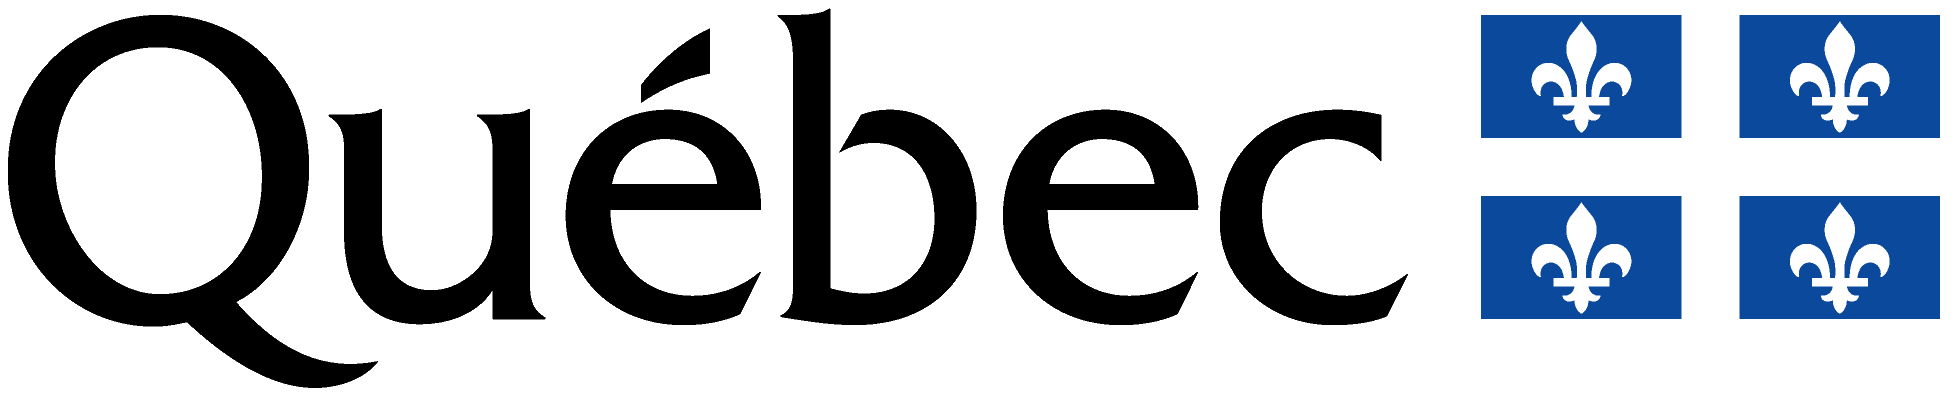 Quebec Logo - Home - Centre de métallurgie du Québec